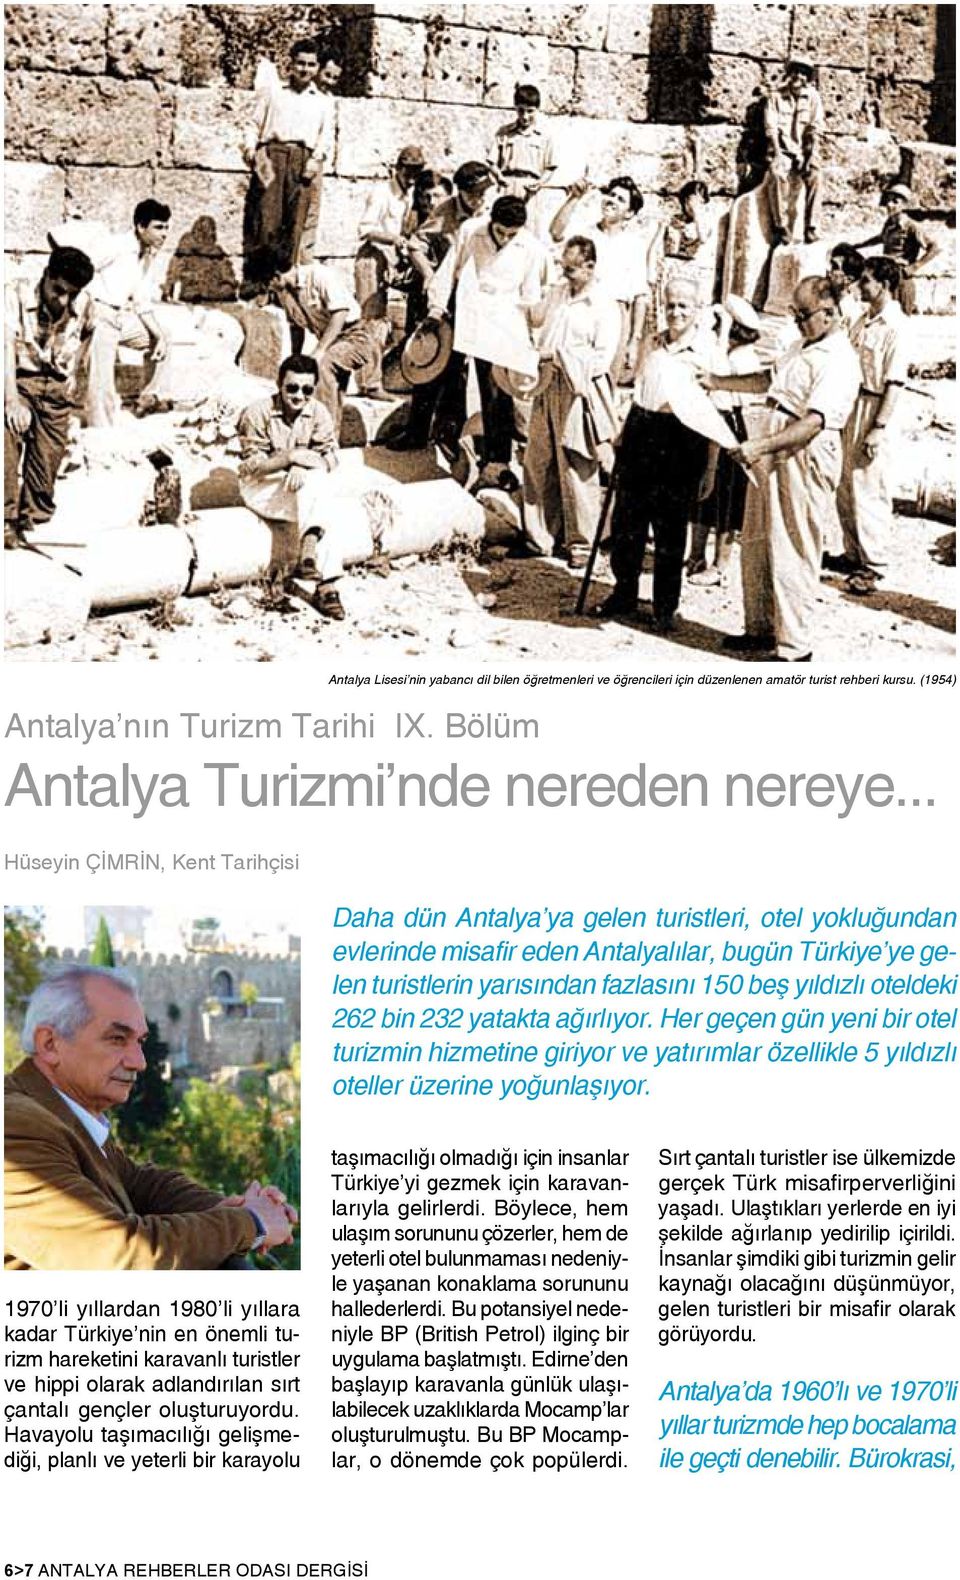 (1954) Daha dün Antalya ya gelen turistleri, otel yokluğundan evlerinde misafir eden Antalyalılar, bugün Türkiye ye gelen turistlerin yarısından fazlasını 150 beş yıldızlı oteldeki 262 bin 232